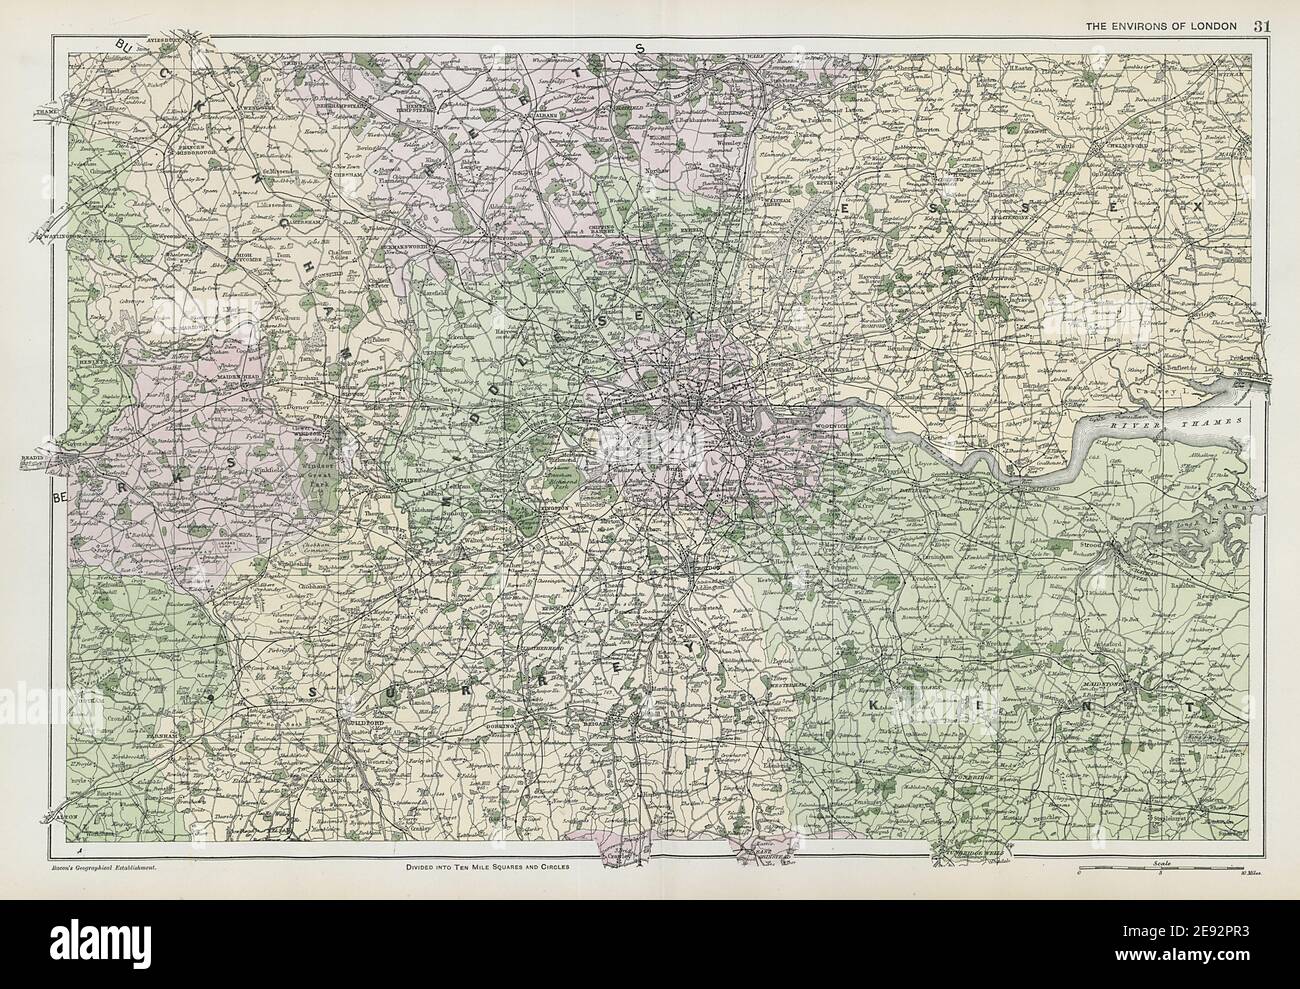 LONDRES & HOME COUNTIES.Middx Essex Kent Surrey Berks Bucks Herts.BACON 1906 mapa Foto de stock